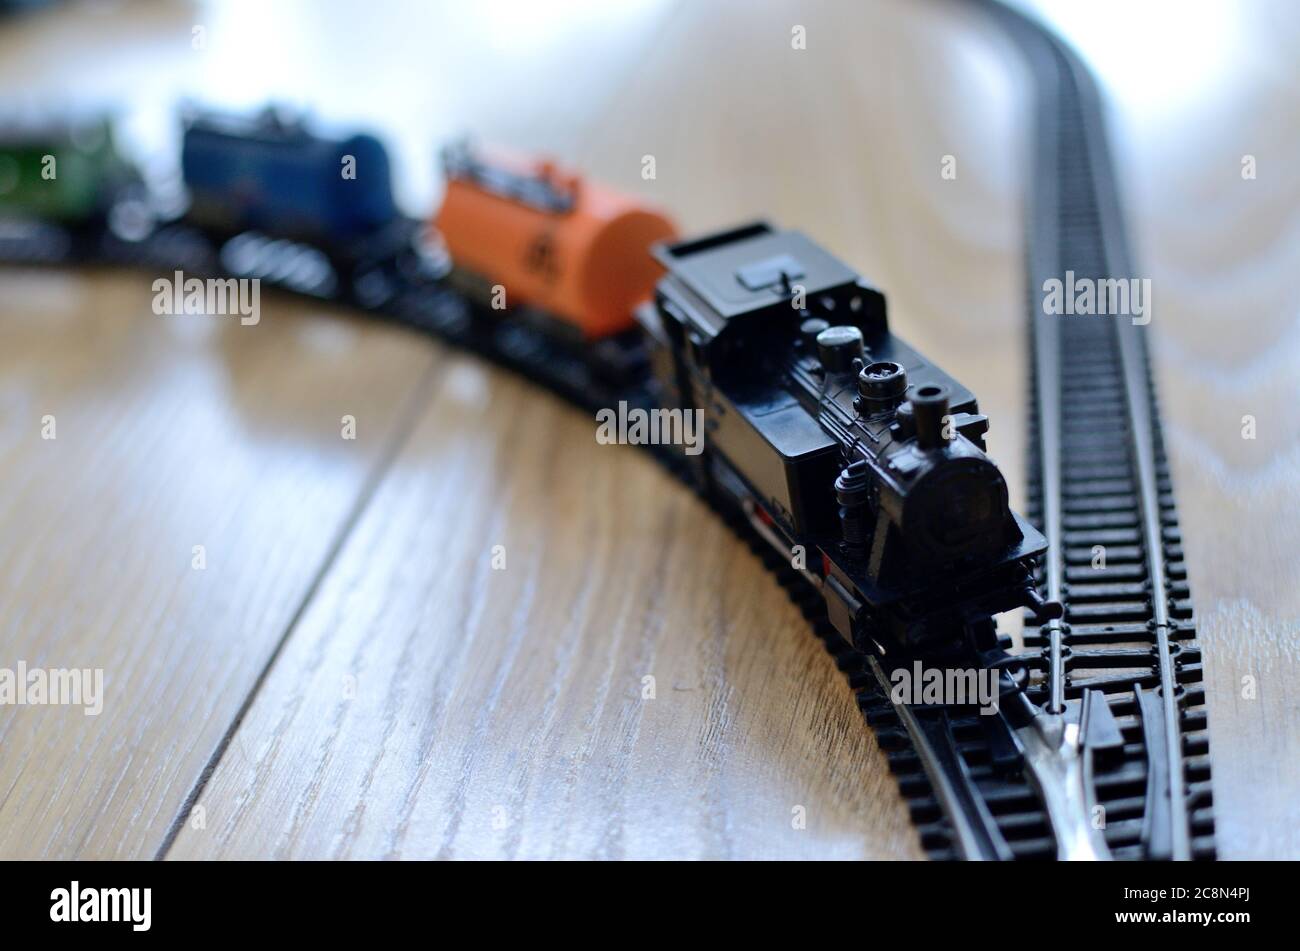 Train miniature de jouets, locomotive noire avec voitures sur rails métalliques, échelle 1:120. Jouet vintage des années 80. Banque D'Images